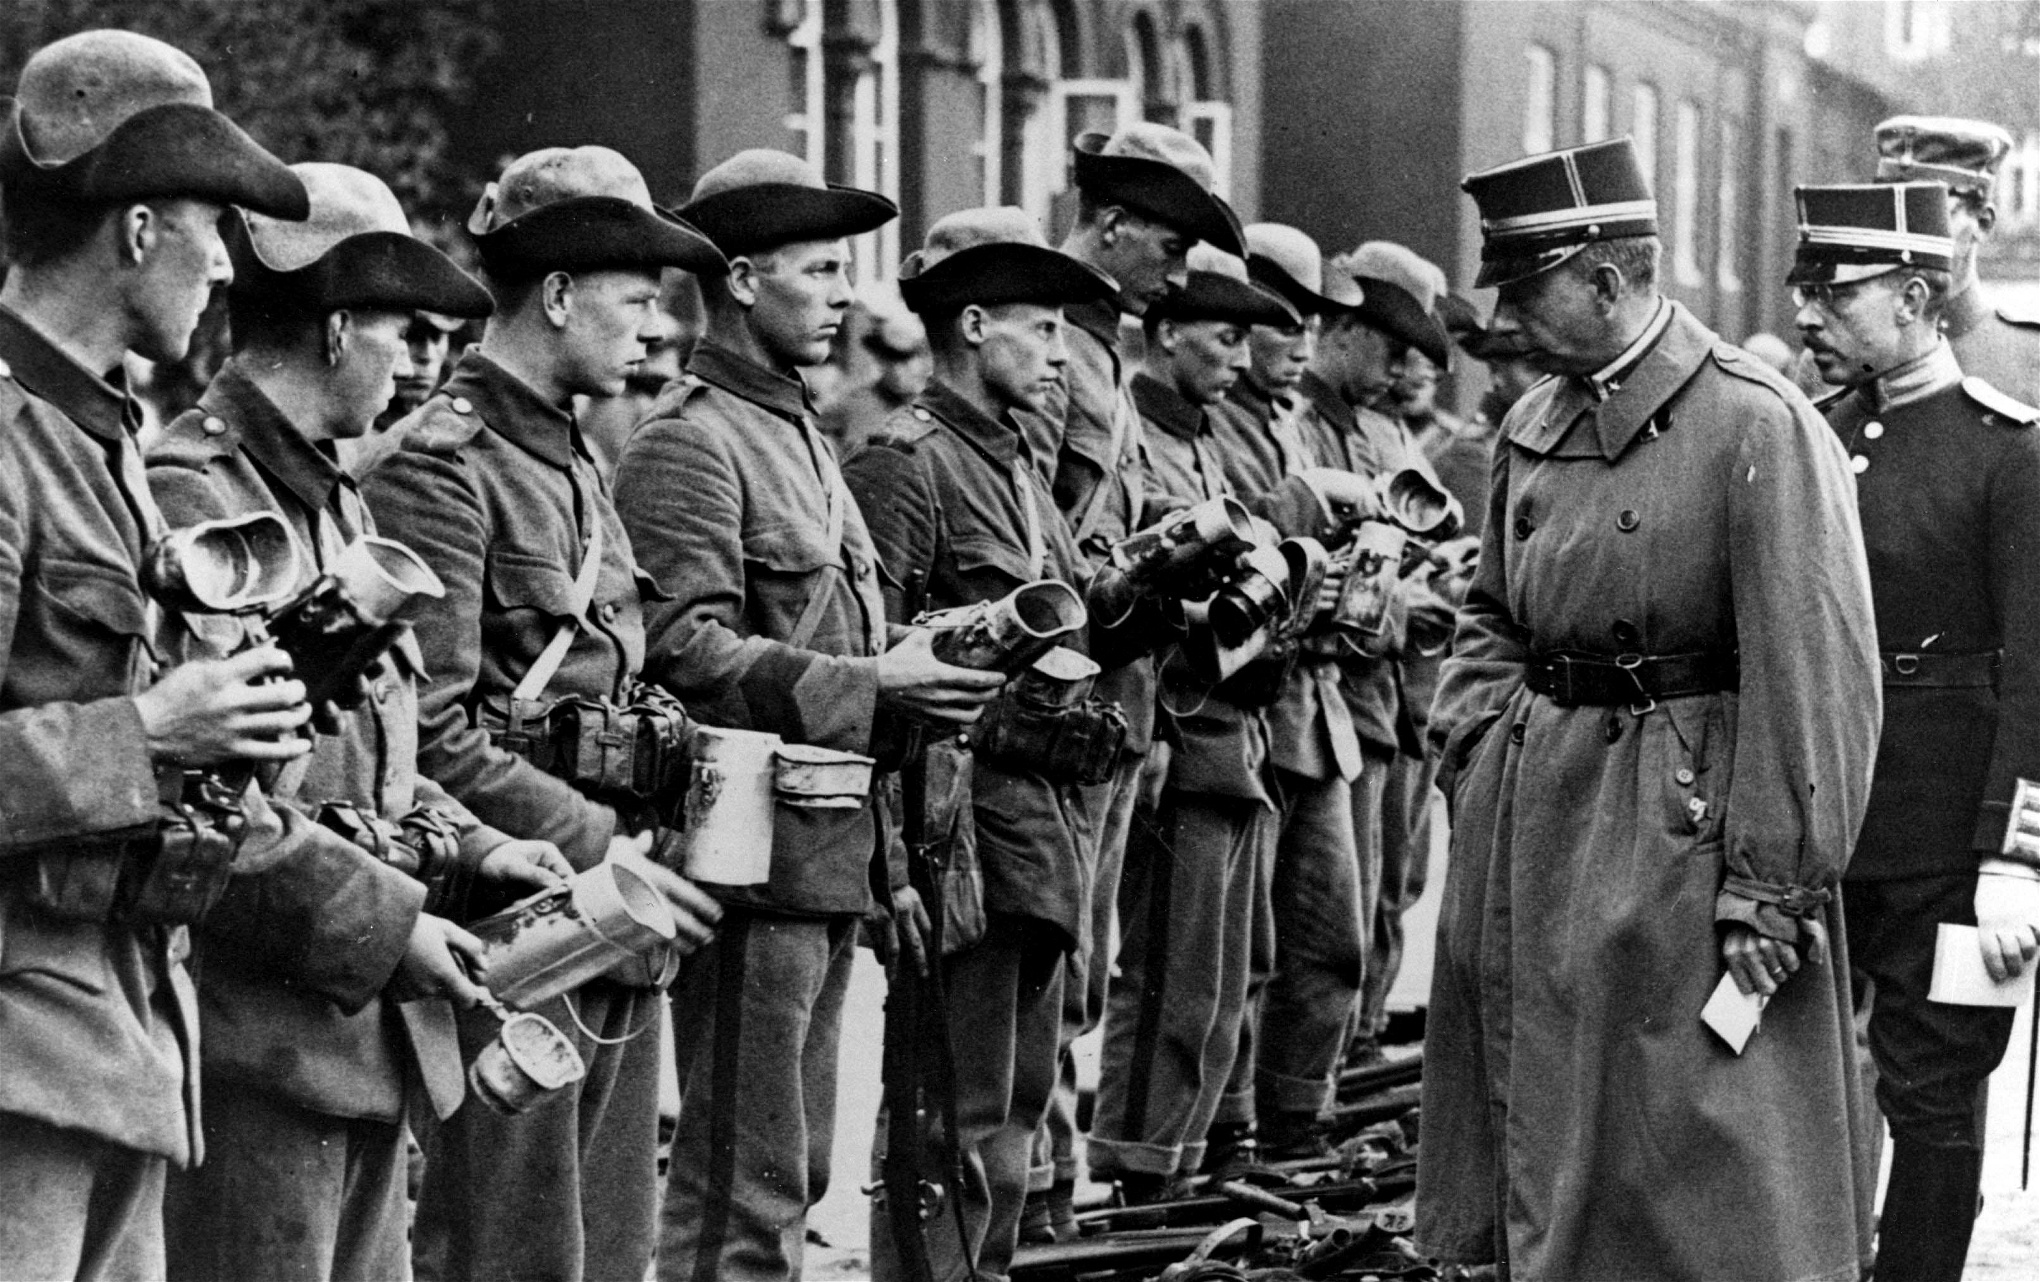 Sveriges kronprins Gustav Adolf inspekterar soldaterna vid Upplandsmanövern 1926. 925 års försvarsbeslut som medförde nedläggning av flera regementen har angetts som en anledning till att nazismen fick fotfäste inom den svenska officerskåren.